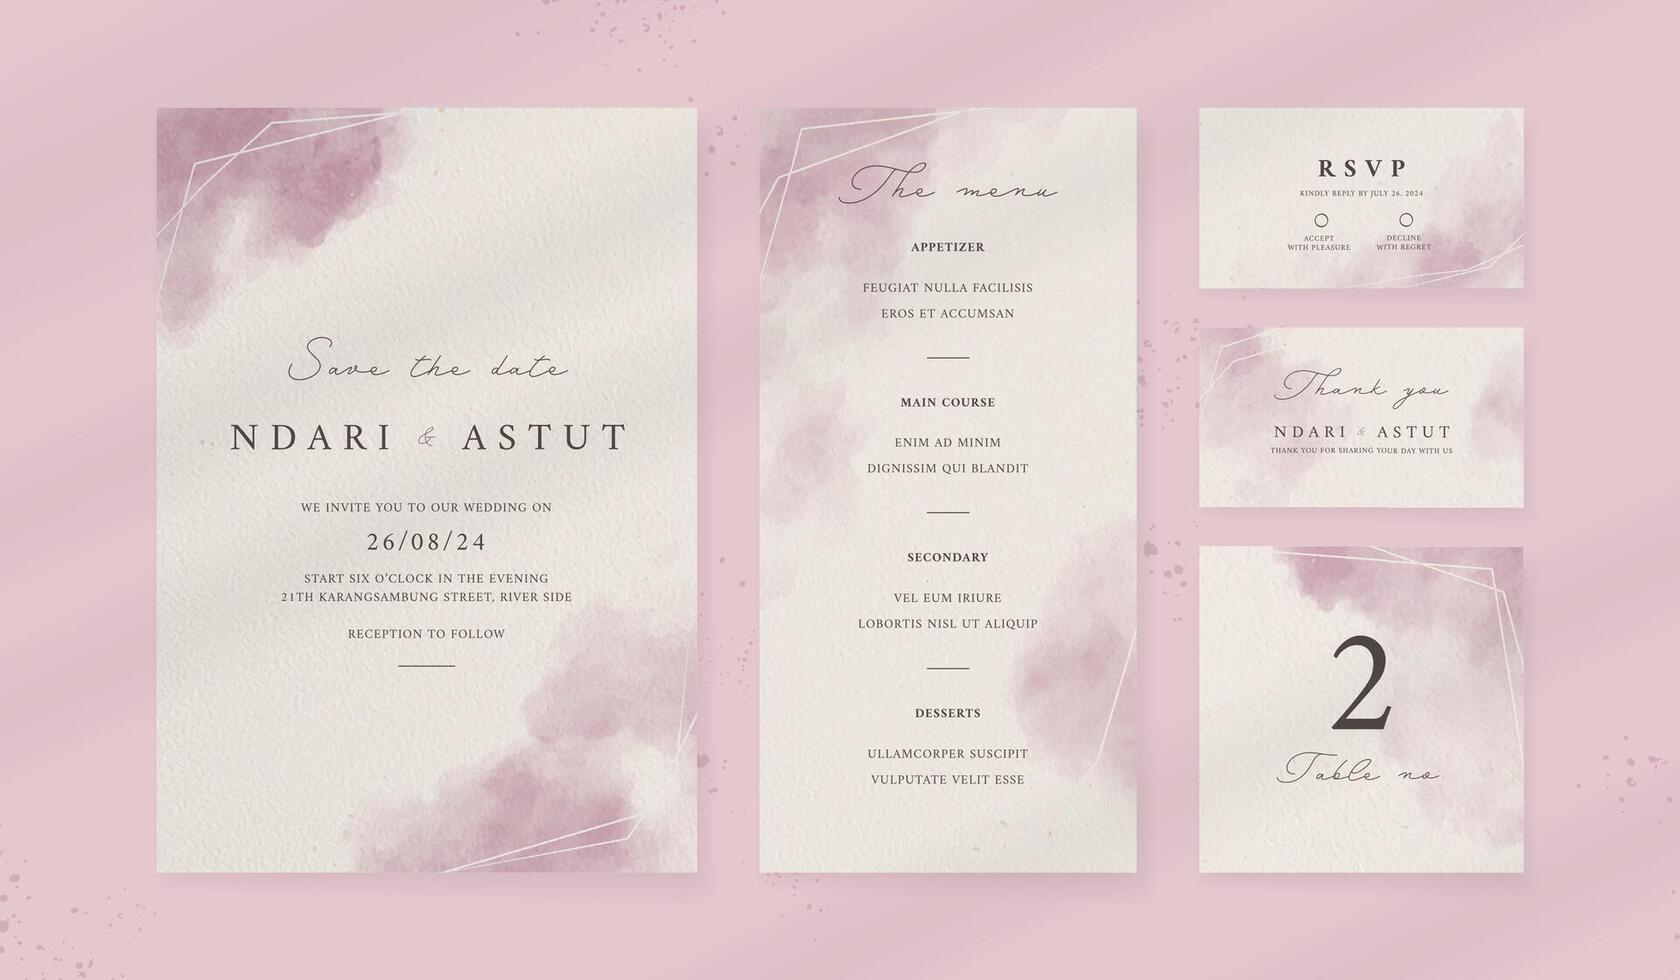 abstrakt Aquarell Hochzeit Einladung Vorlage. einstellen von Hochzeit Schreibwaren. Luxus Karte und Poster Hintergrund. vektor